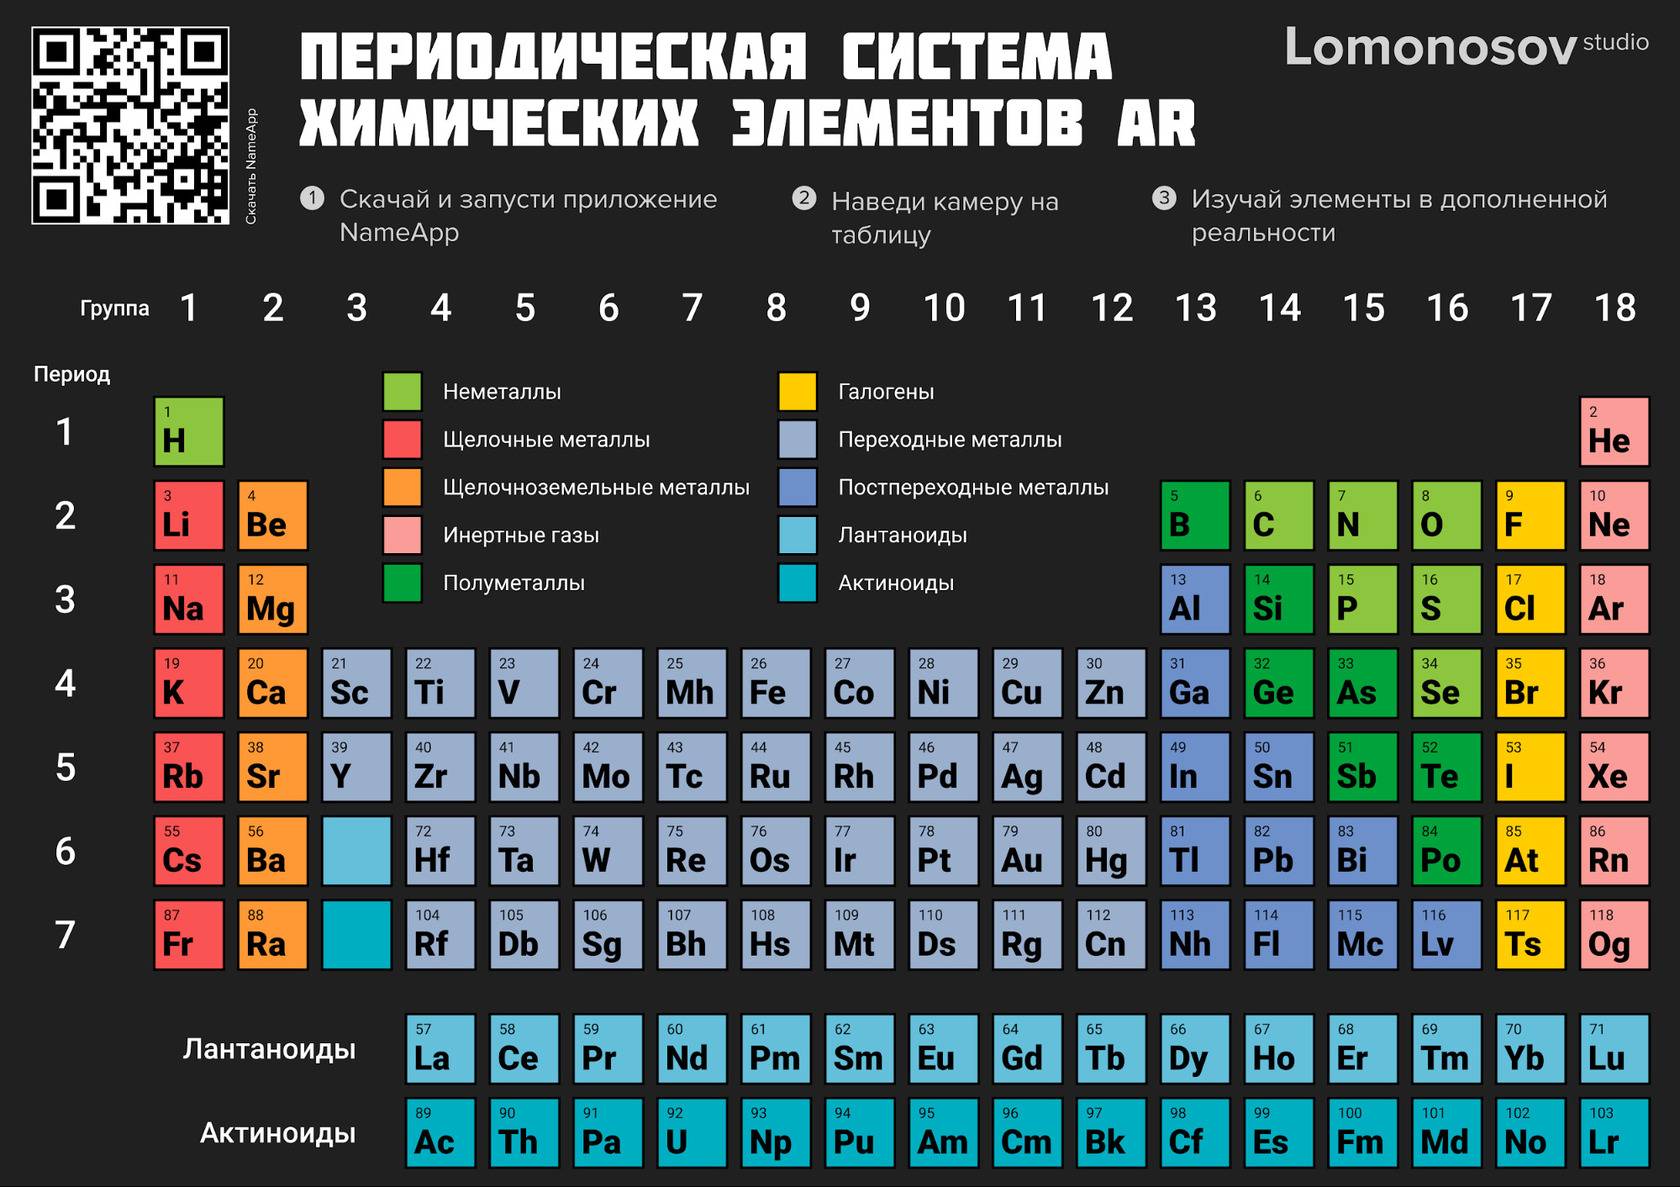 Дизайн периодической системы химических элементов. Таблица распечатывается и считывается камерой смартфона для получения дополнительной информации в AR